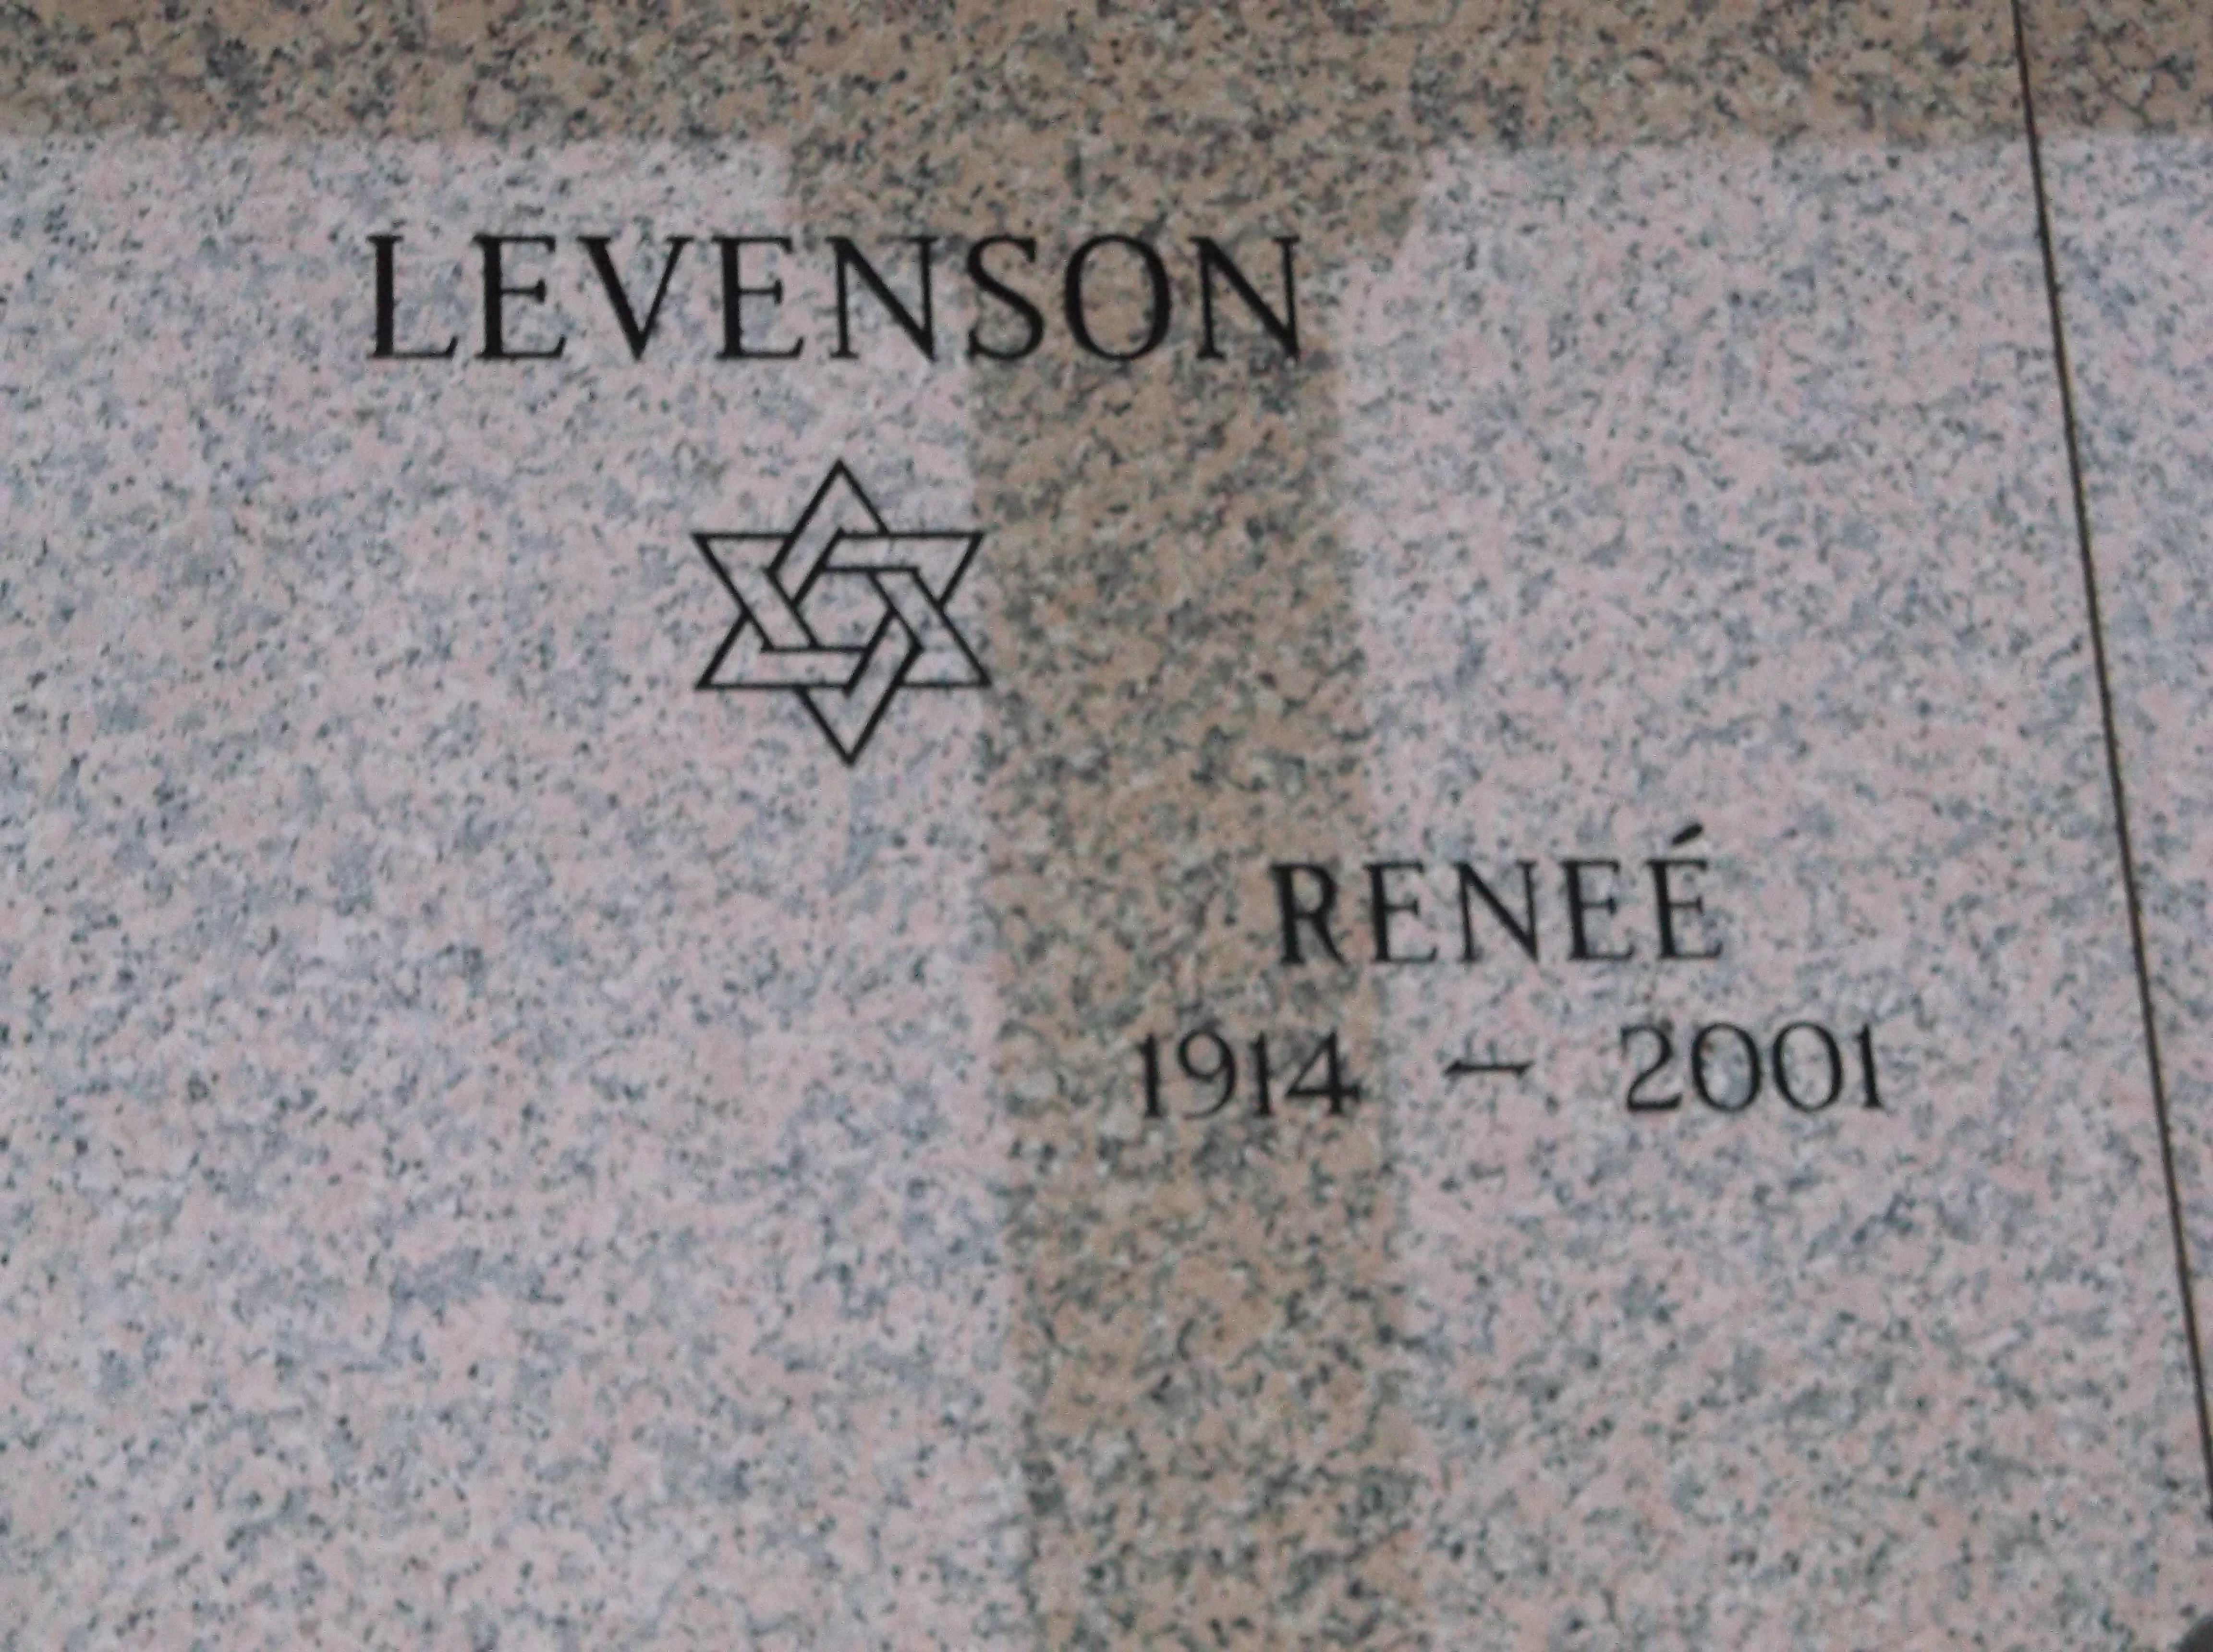 Reneé Levenson